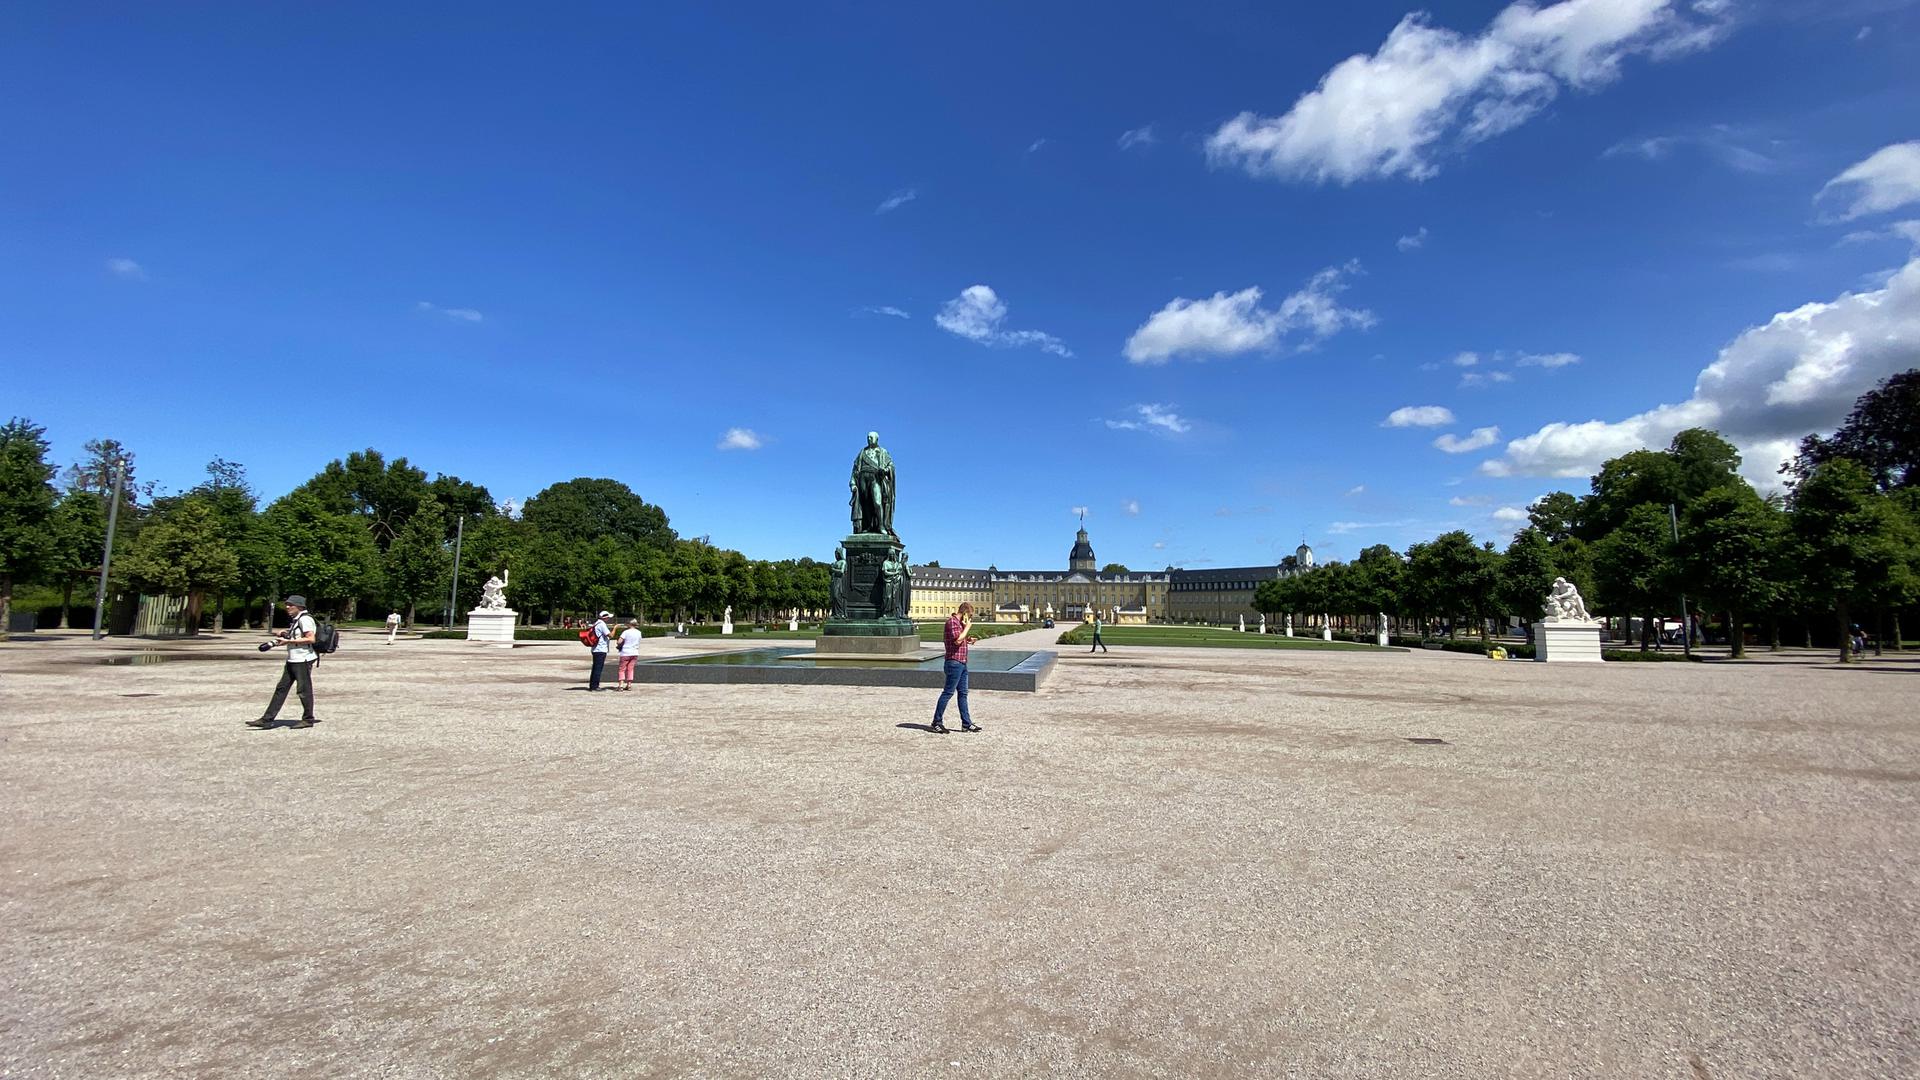 Weit und breit kein Klo: Das stört manche Besucher des Karlsruher Schlossplatzes.